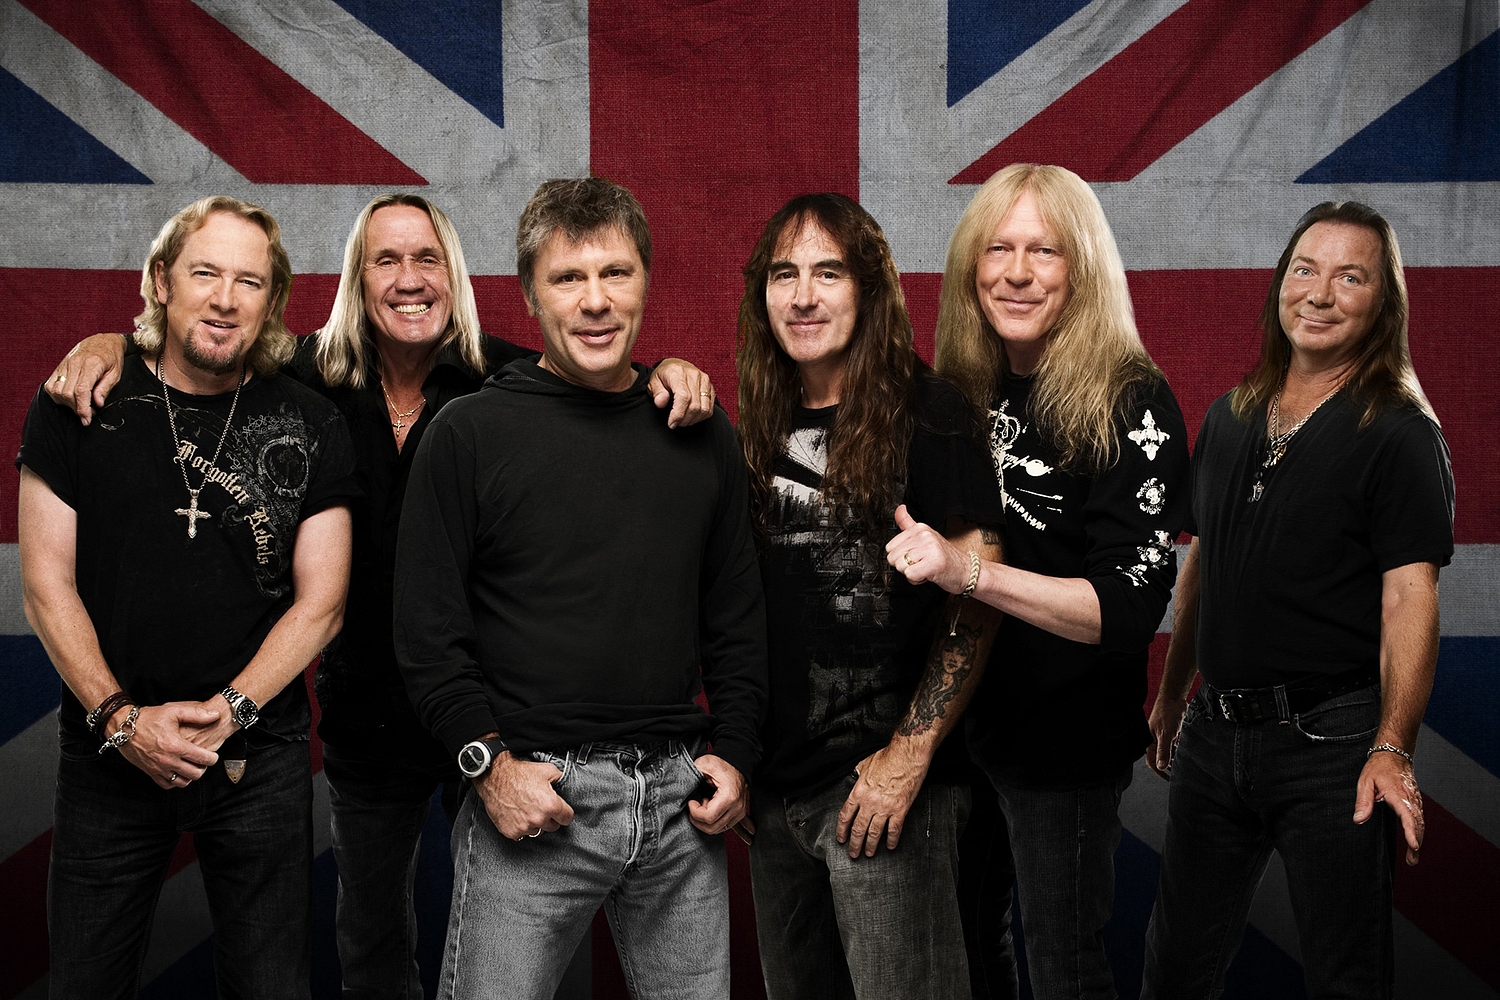 Iron Maiden, Kate Bush and Oasis favourites to headline Glastonbury 2015